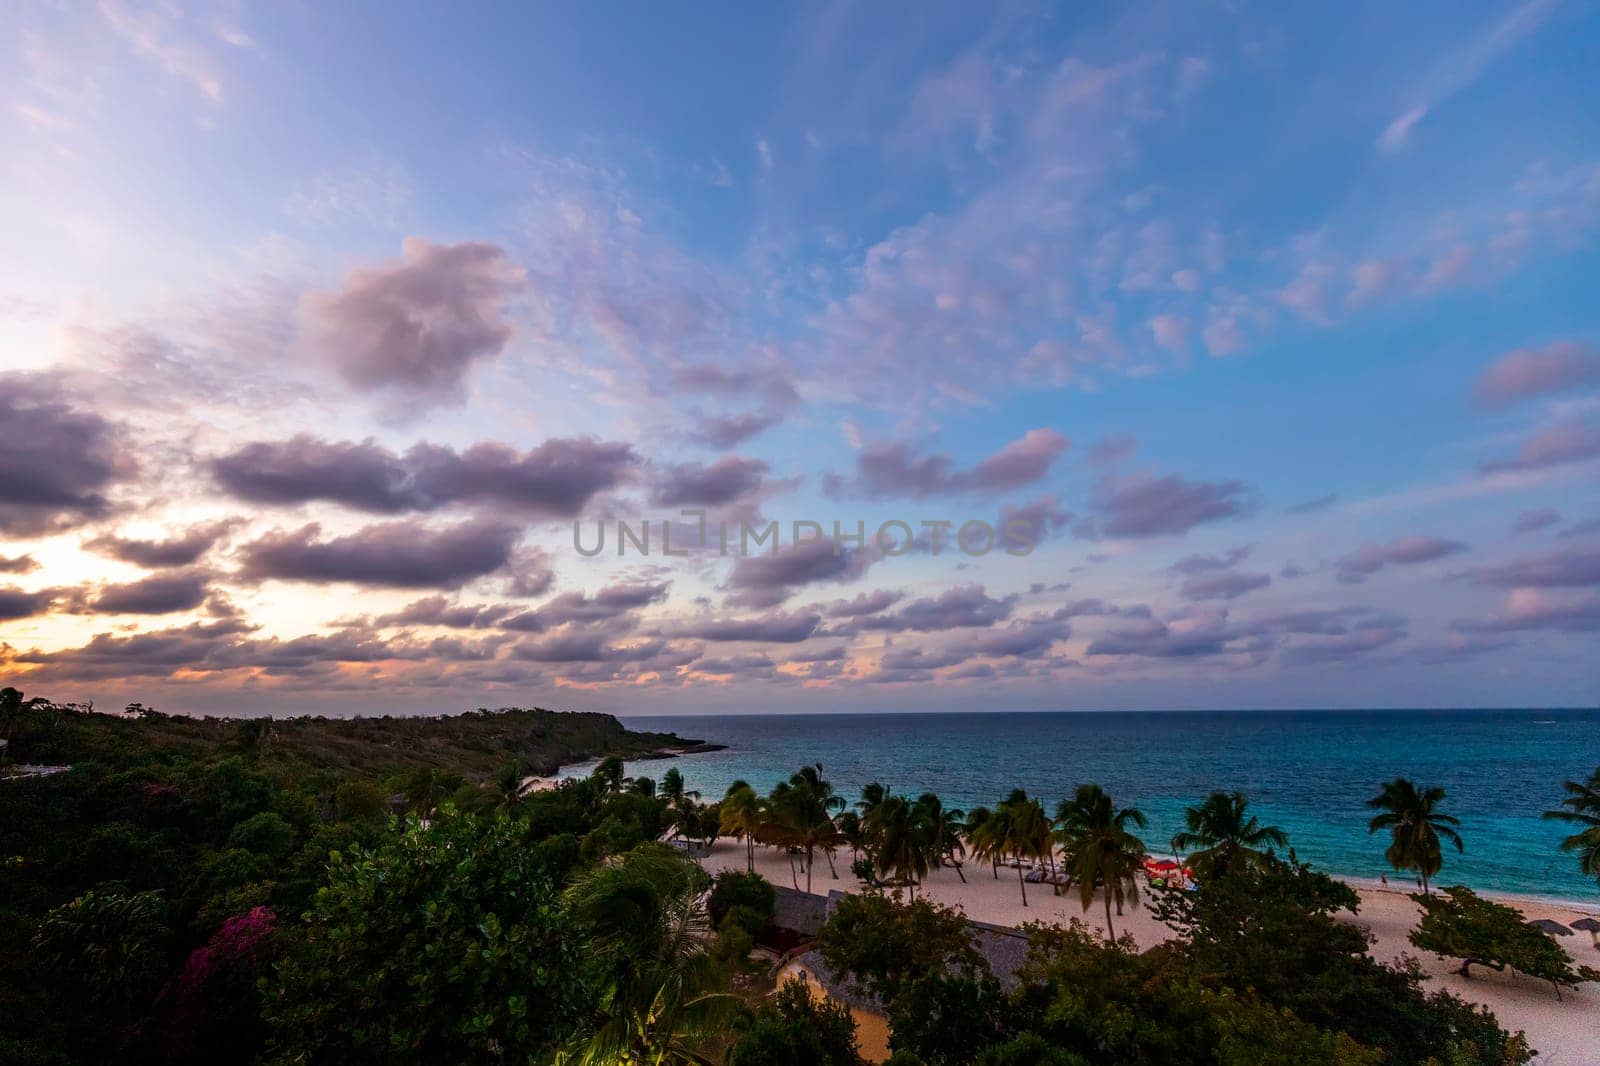 Tropical sunset on the beach. Guardalavaca, Cuba by EdVal